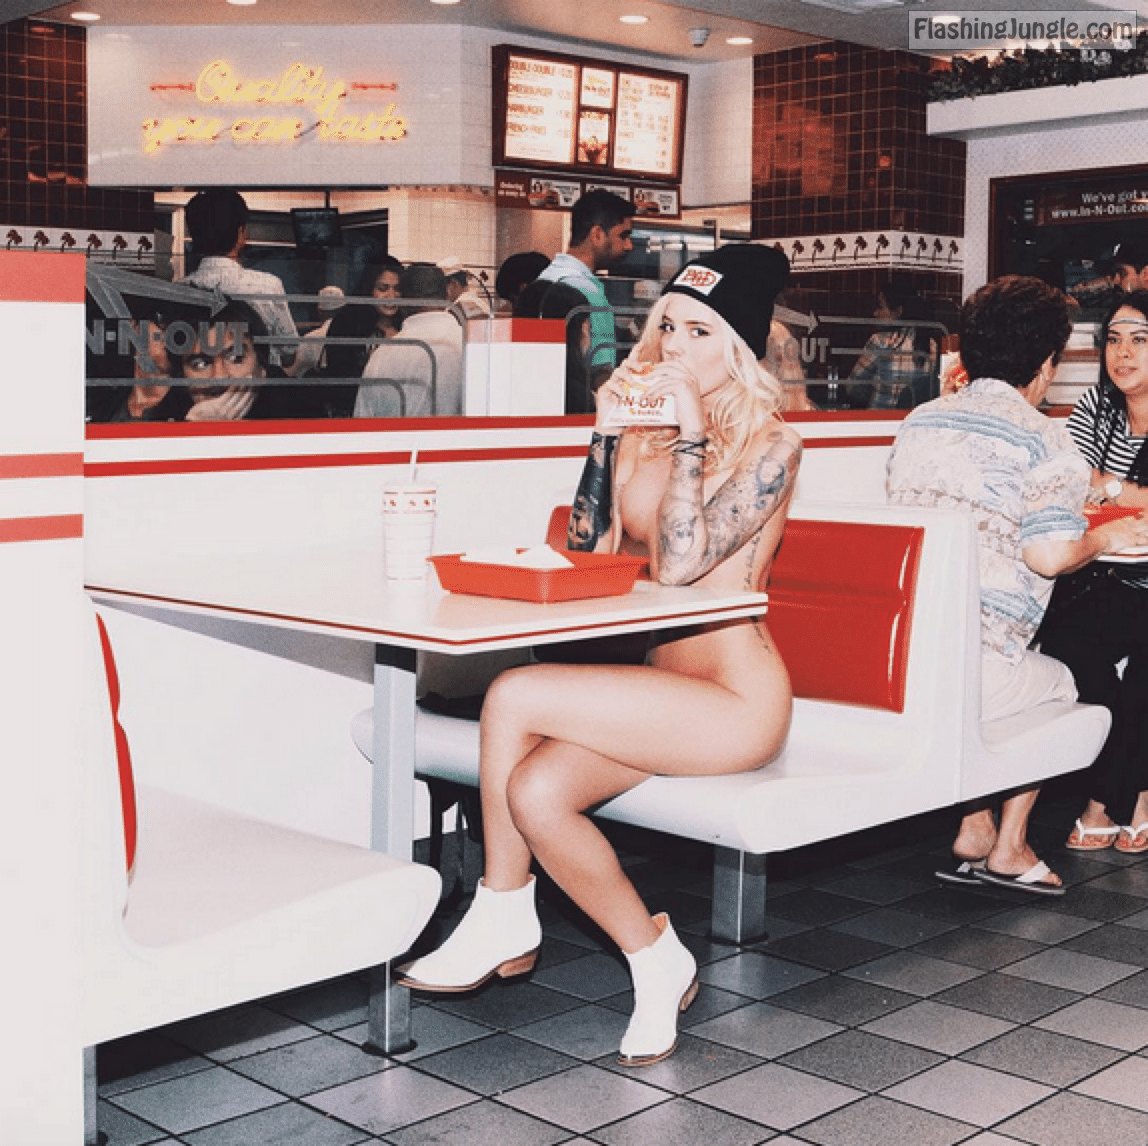 Public Nudity Pics: restaurant nudity